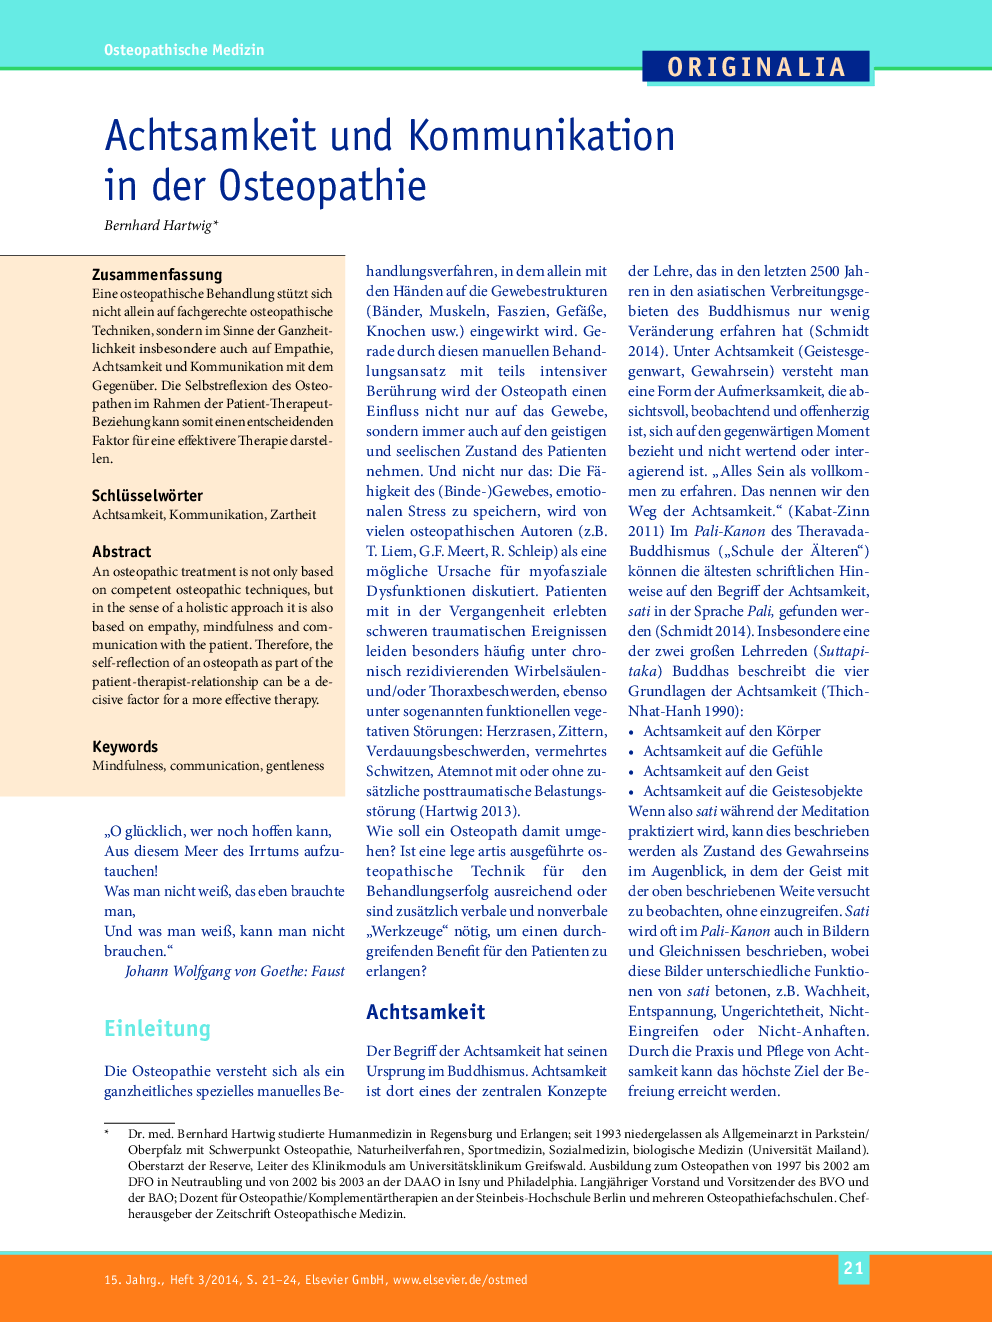 Achtsamkeit und Kommunikation in der Osteopathie